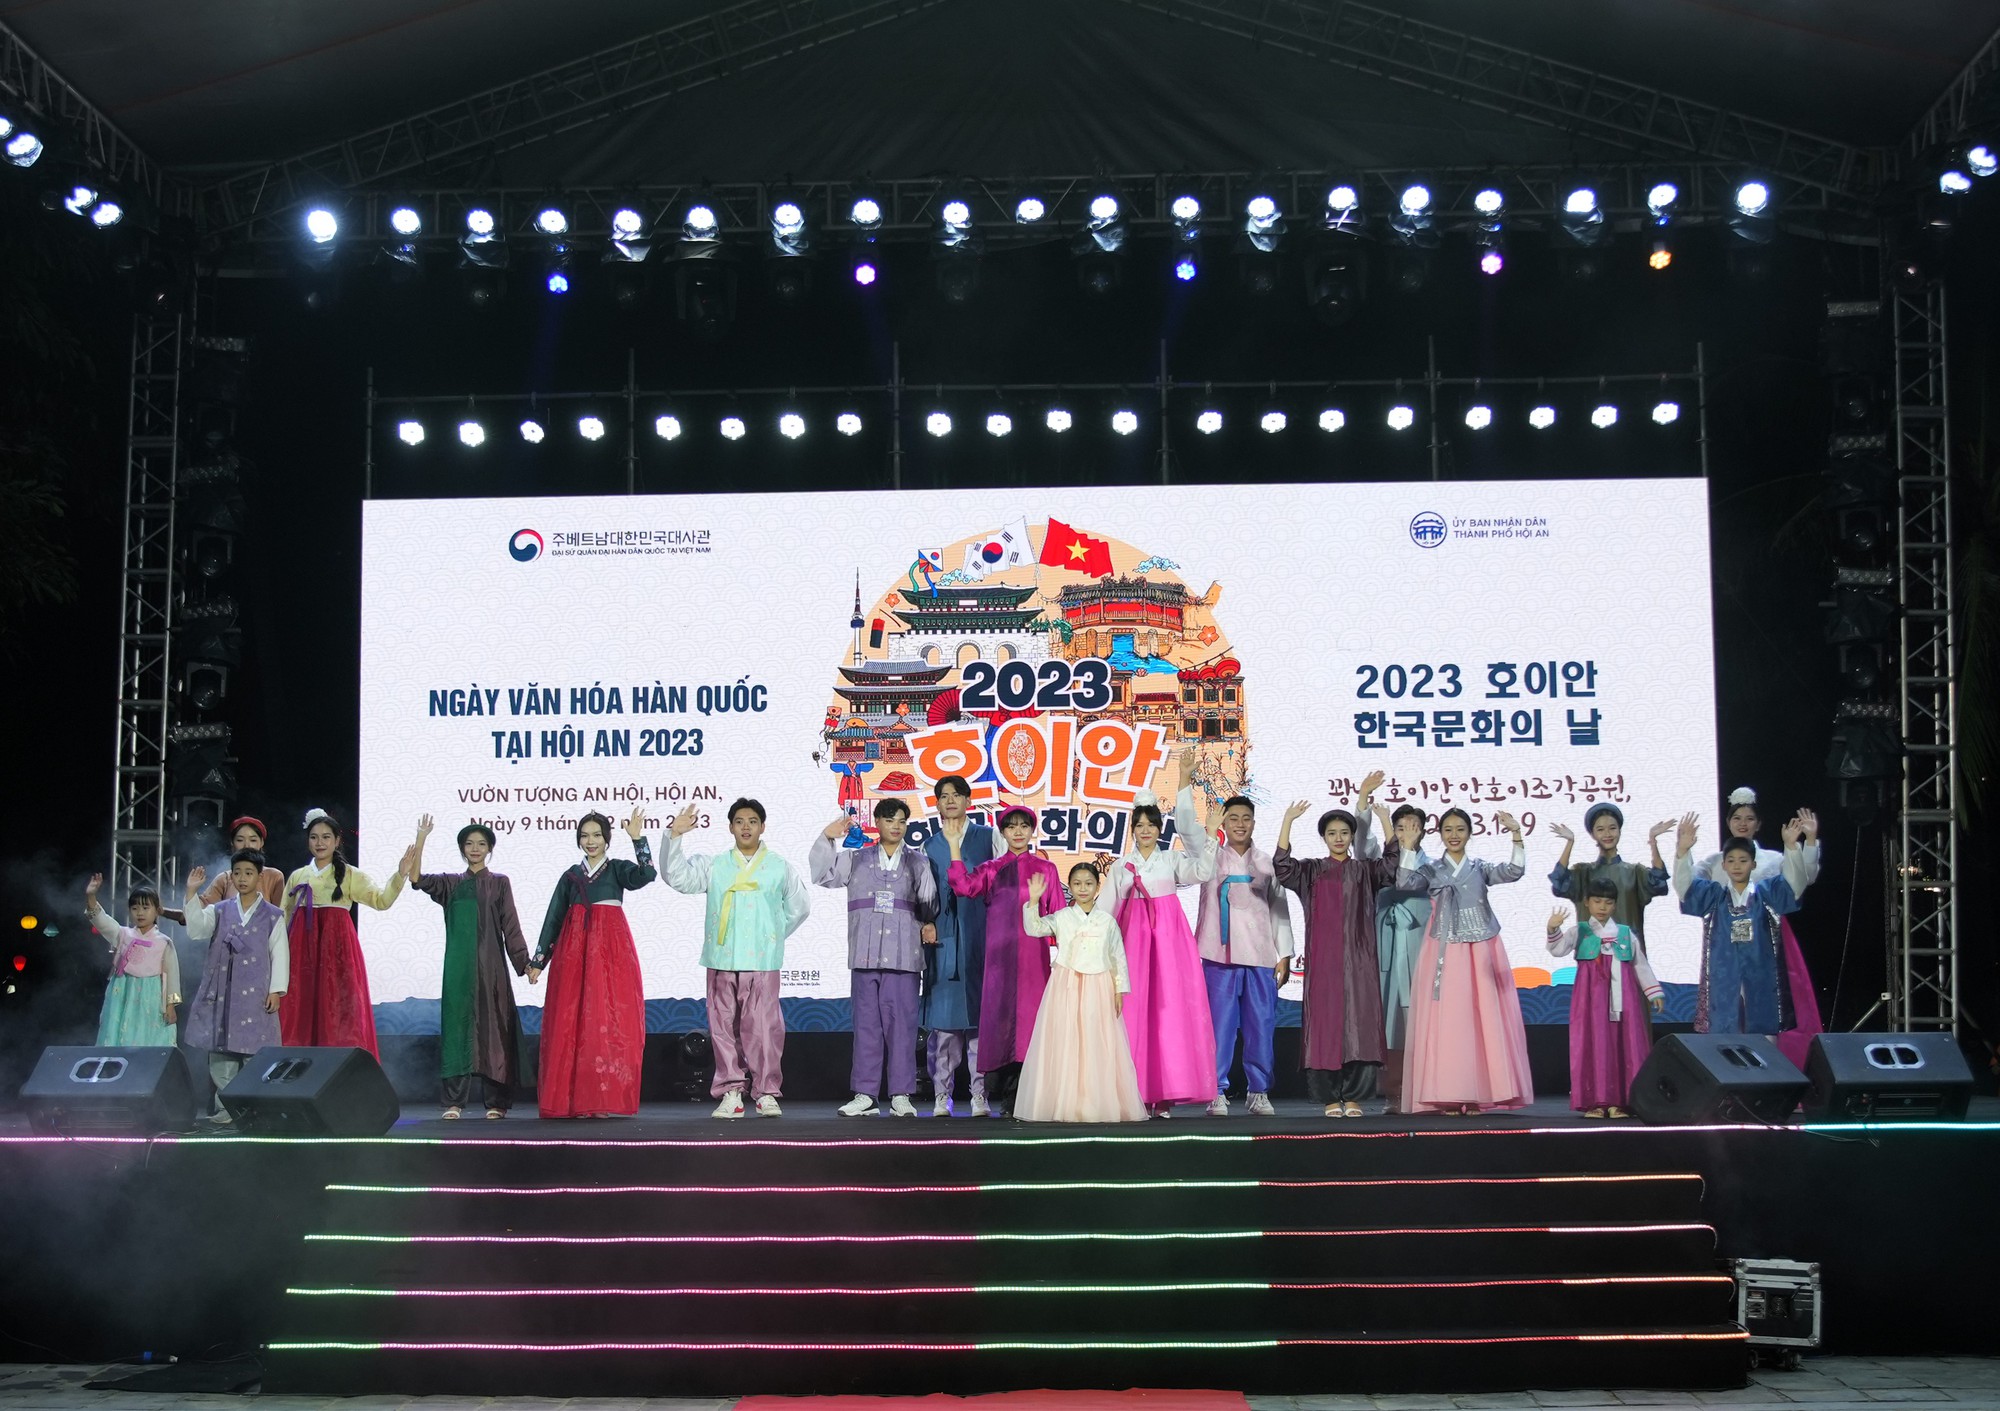 Hình ảnh ấn tượng “Ngày văn hóa Hàn Quốc tại Hội An 2023” - Ảnh 8.